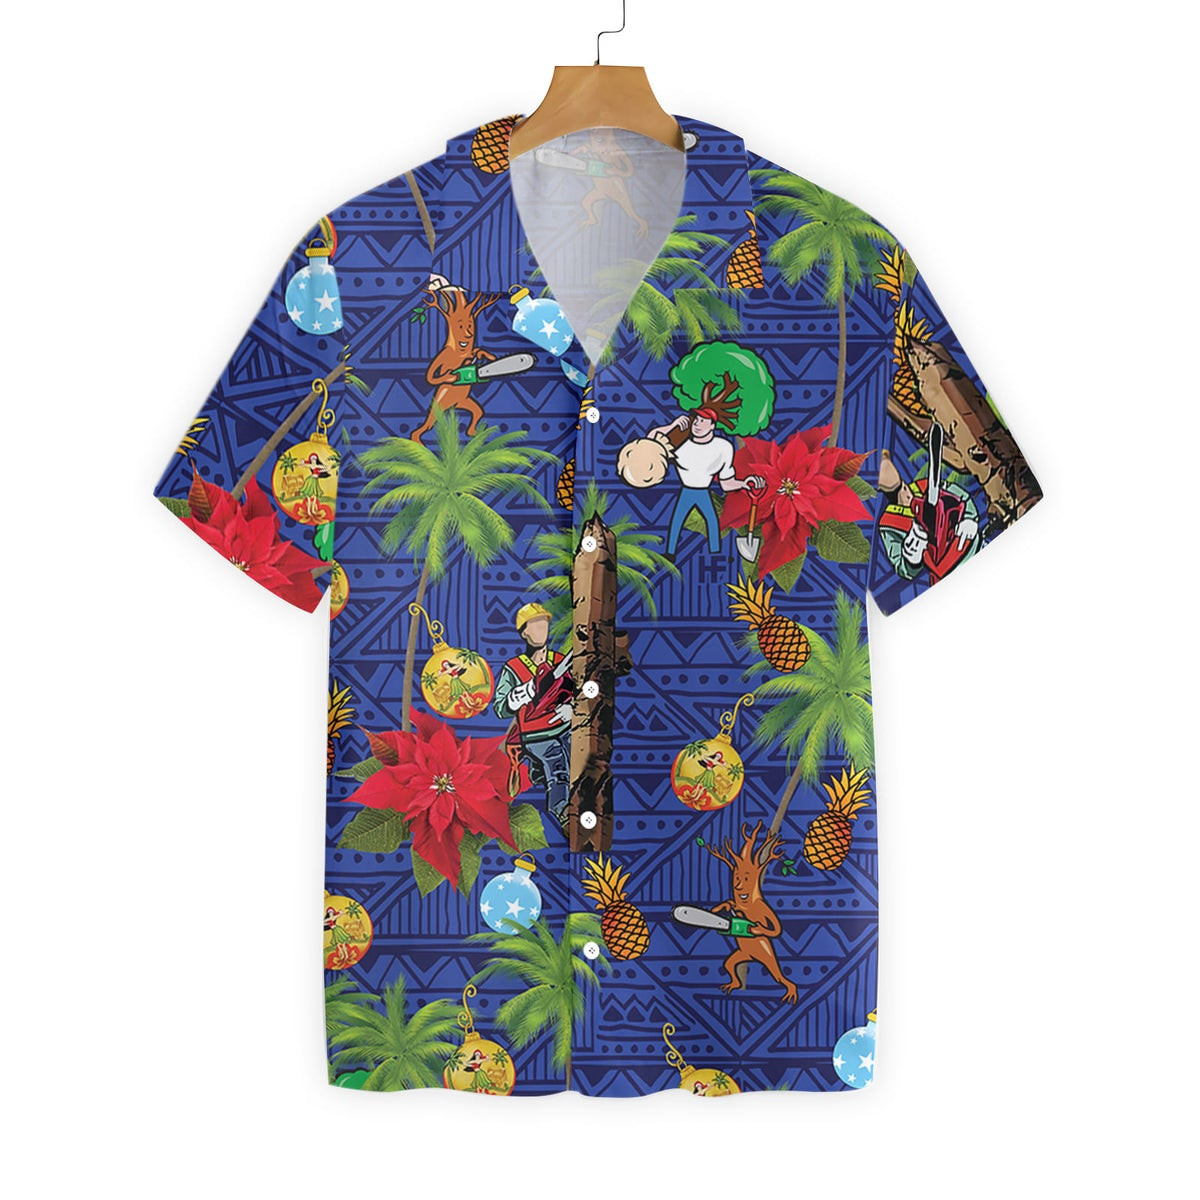 Arborist Proud Hawaiian Shirt